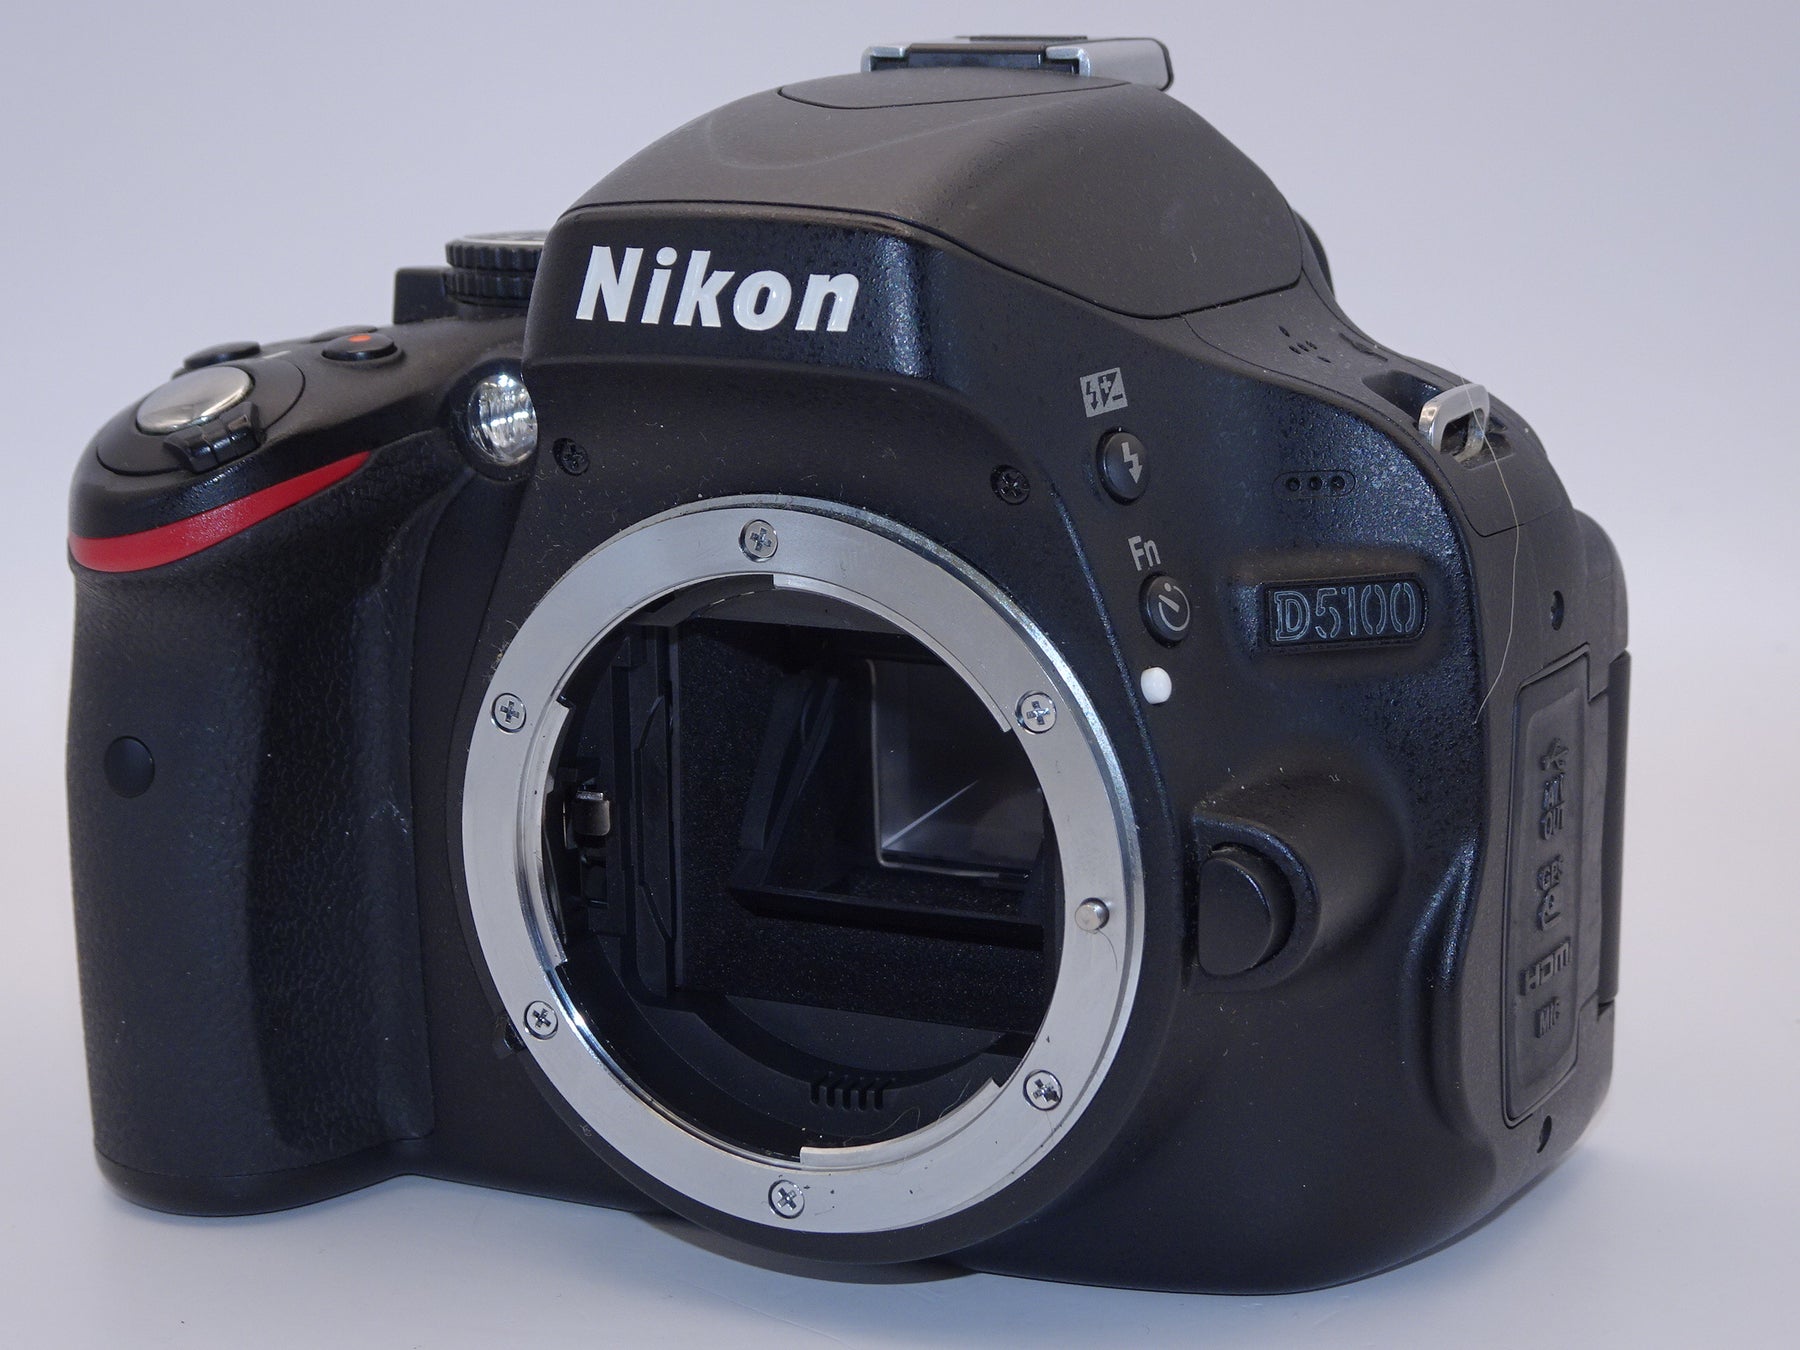 メール便不可 wi-fiSD変更可- Nikon 動画 一眼レフ D5100 カメラ ...